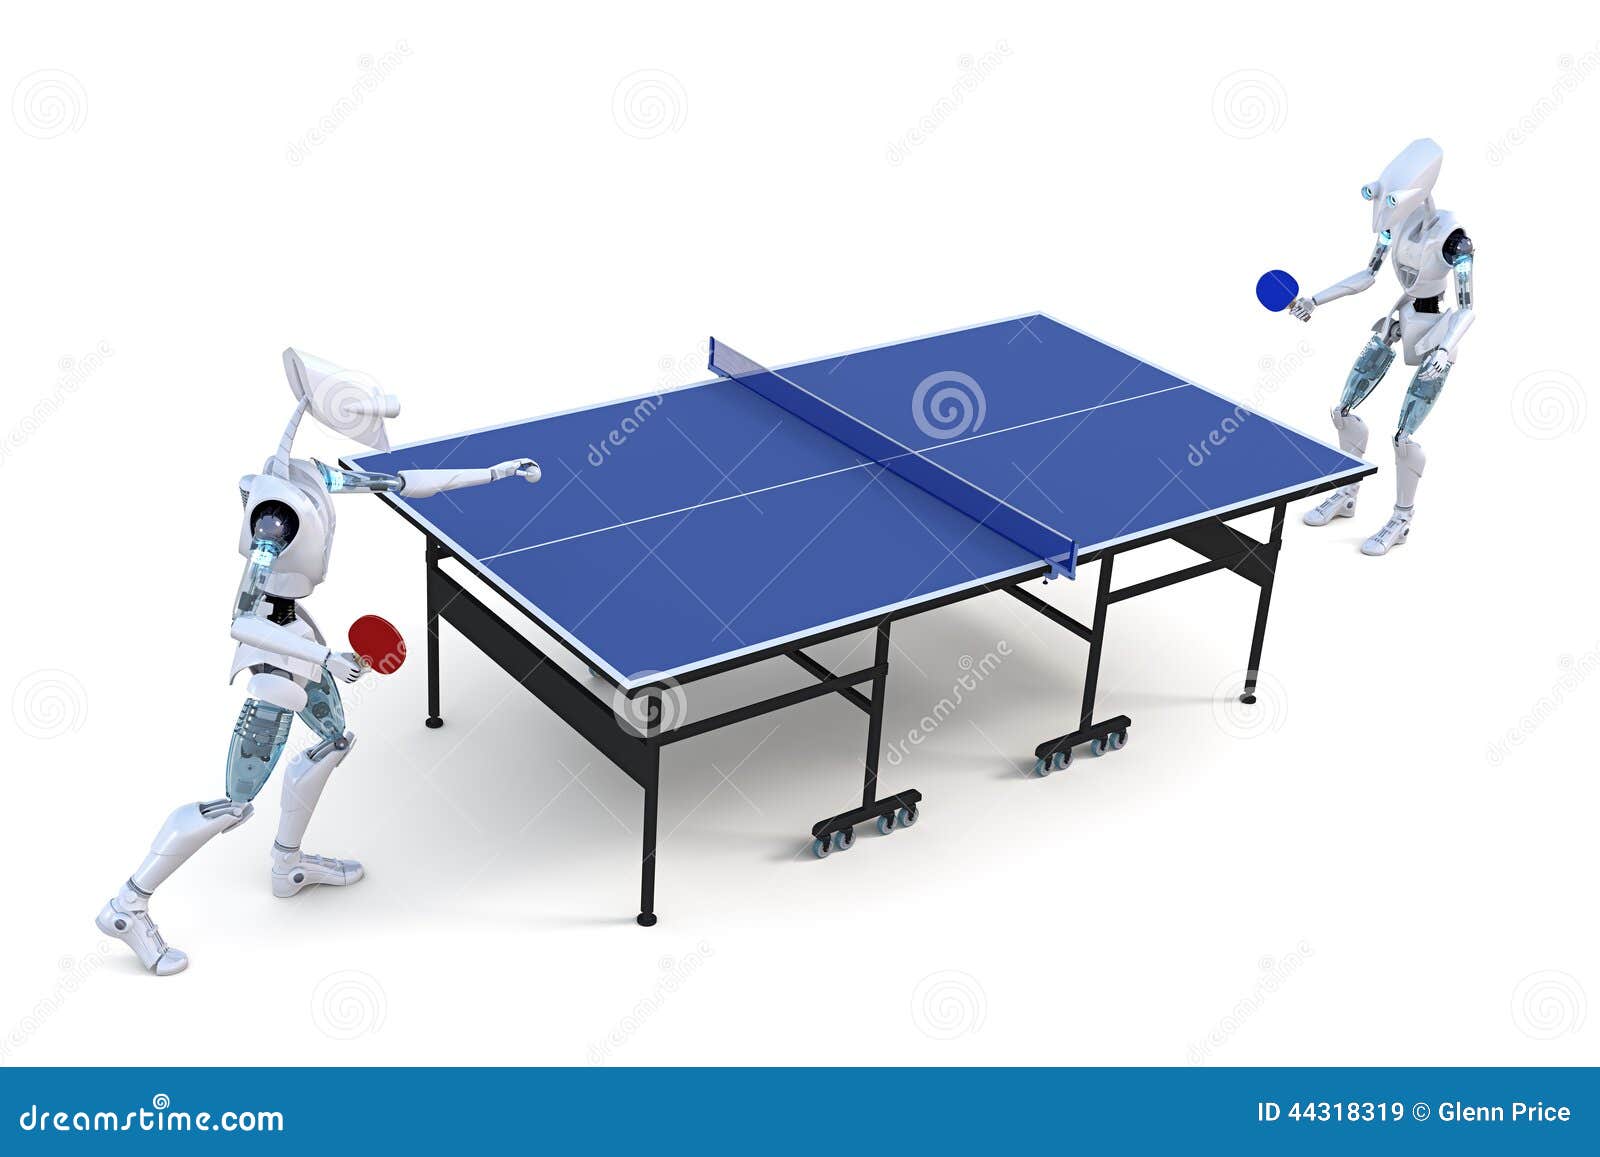 Робот играющий в настольный теннис. Робот для настольного тенниса. Робот играет в настольный теннис. Робот играет в настольный теннис с человеком.